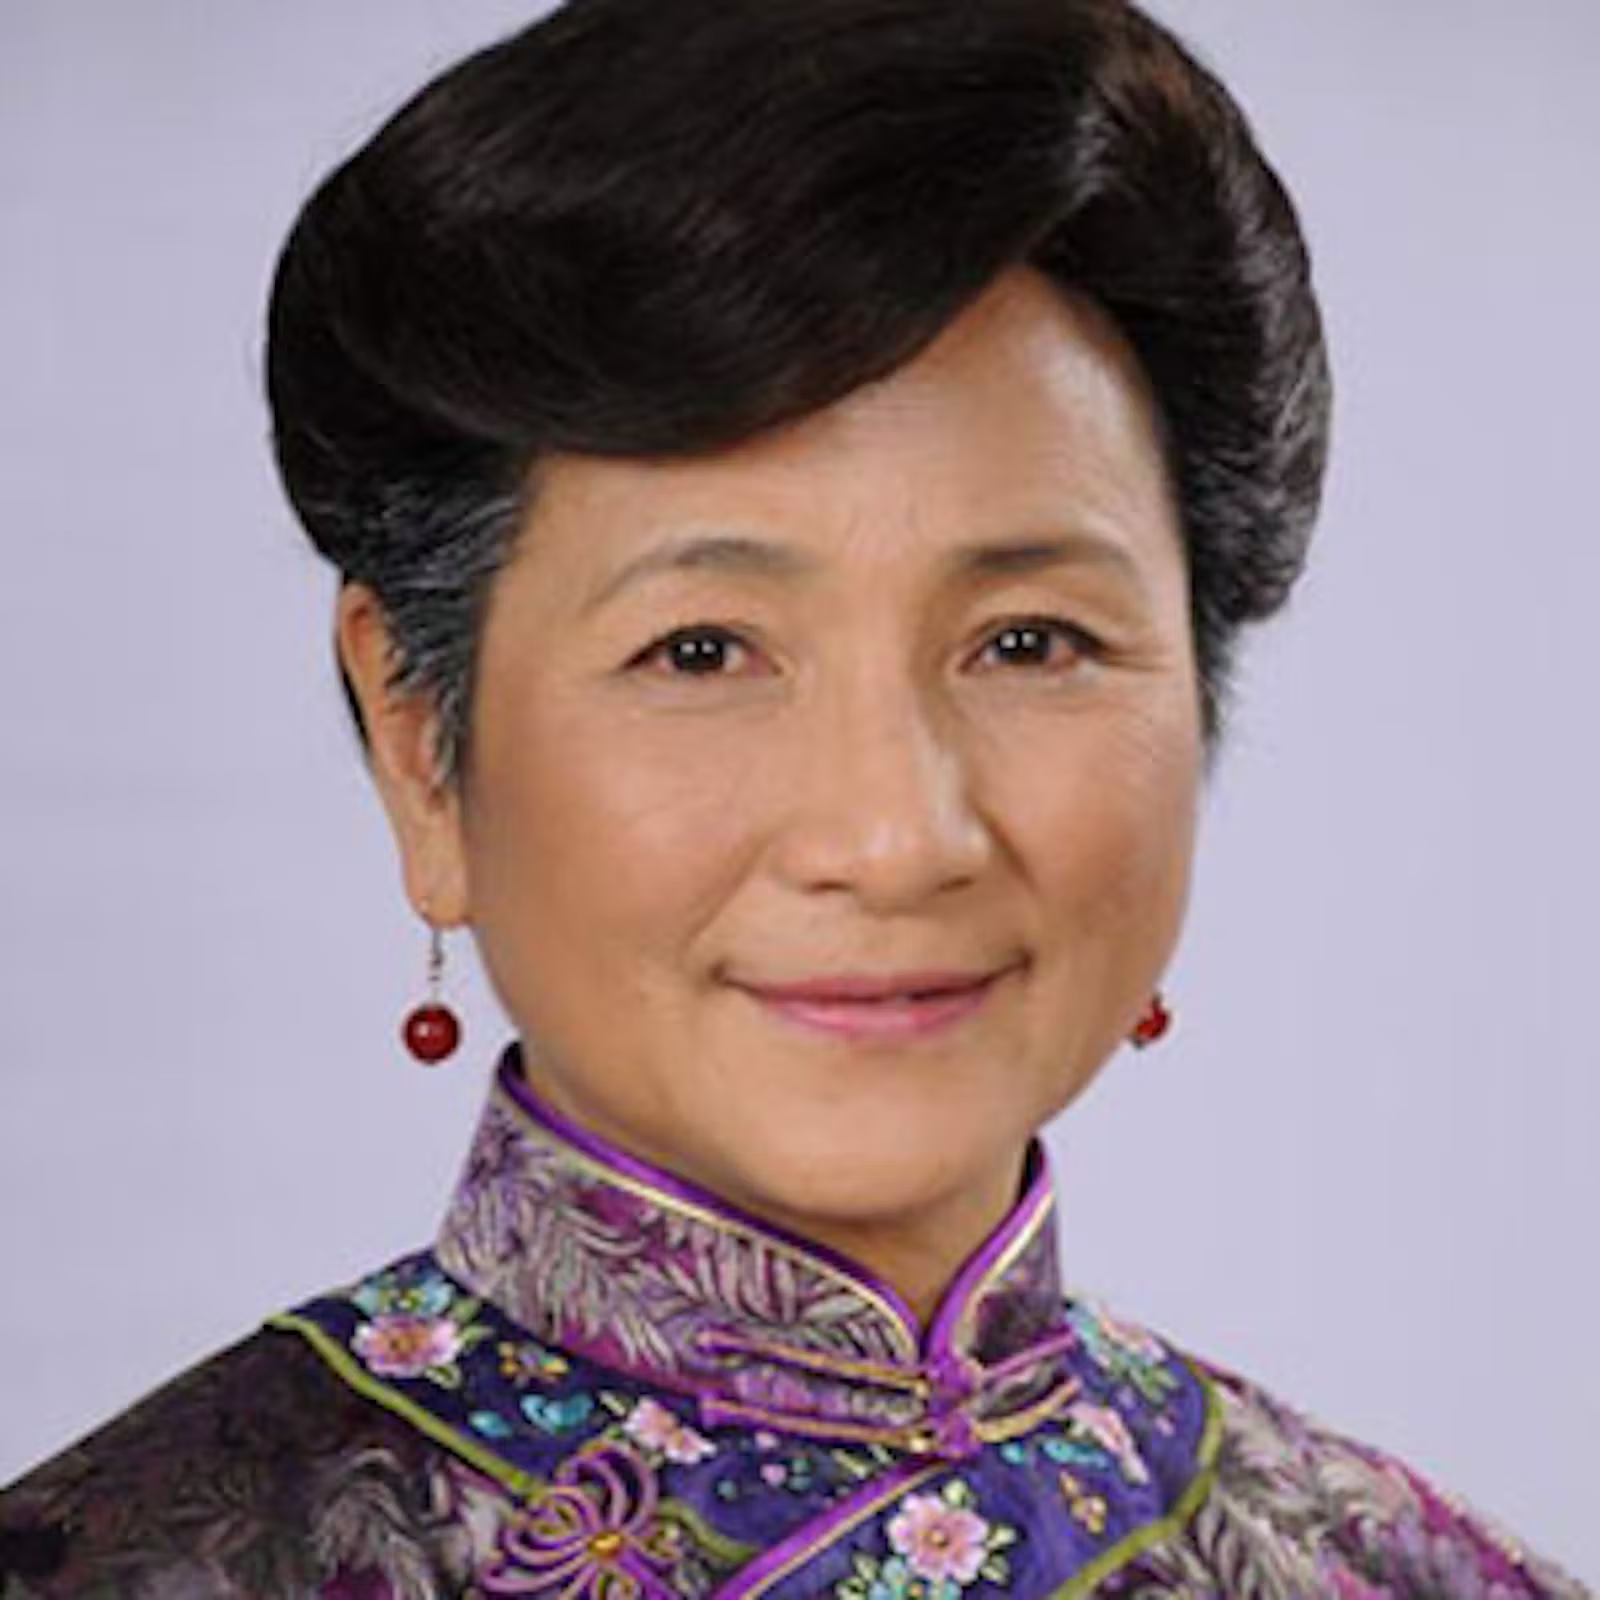 Cheng Pei Pei